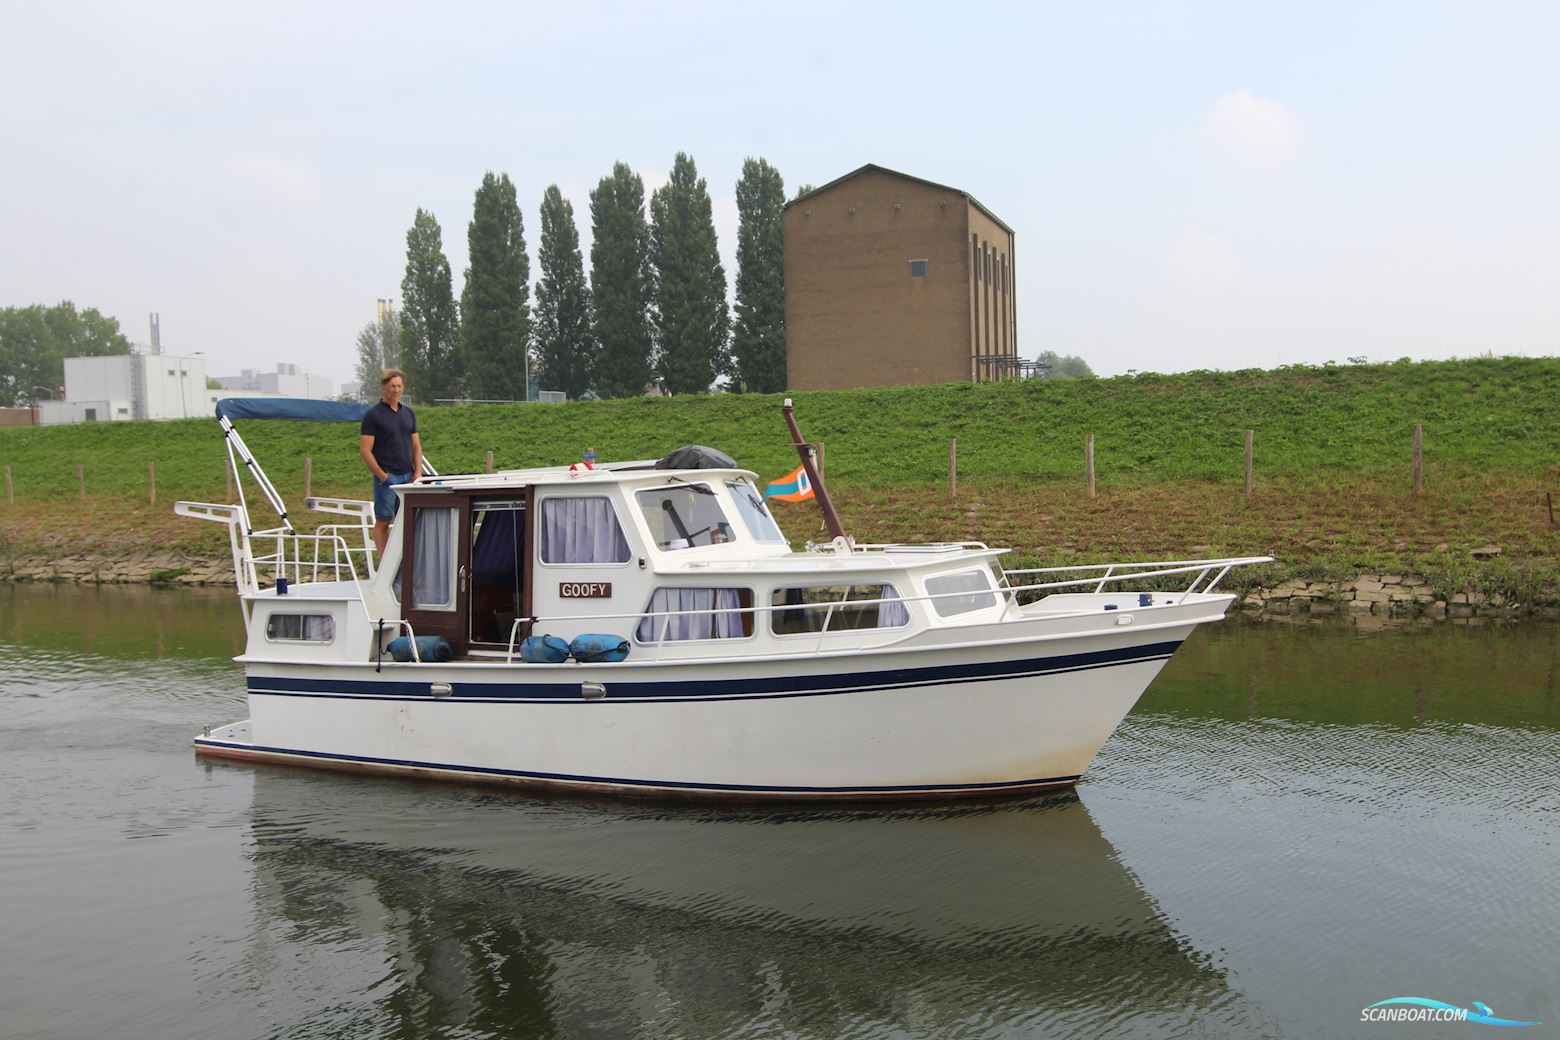 Mebokruiser 890AK Motorboot 1980, mit Mercedes motor, Niederlande